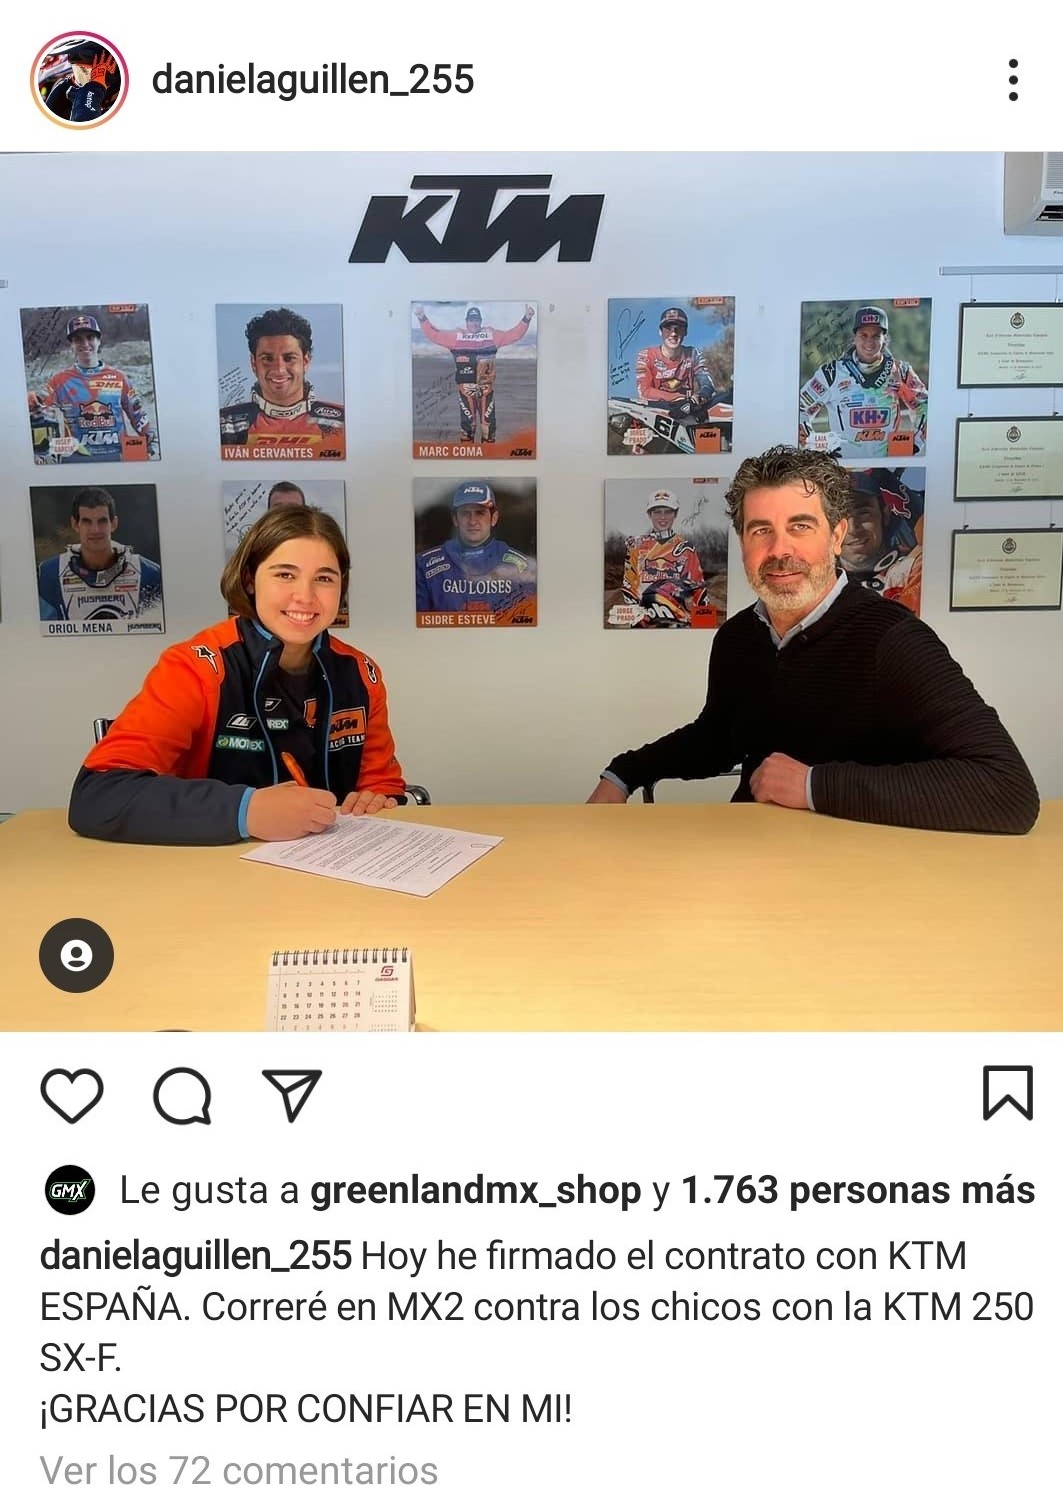 Daniela Guillén 255 hace oficial su contrato con KTM España para el Campeonato de España 2021